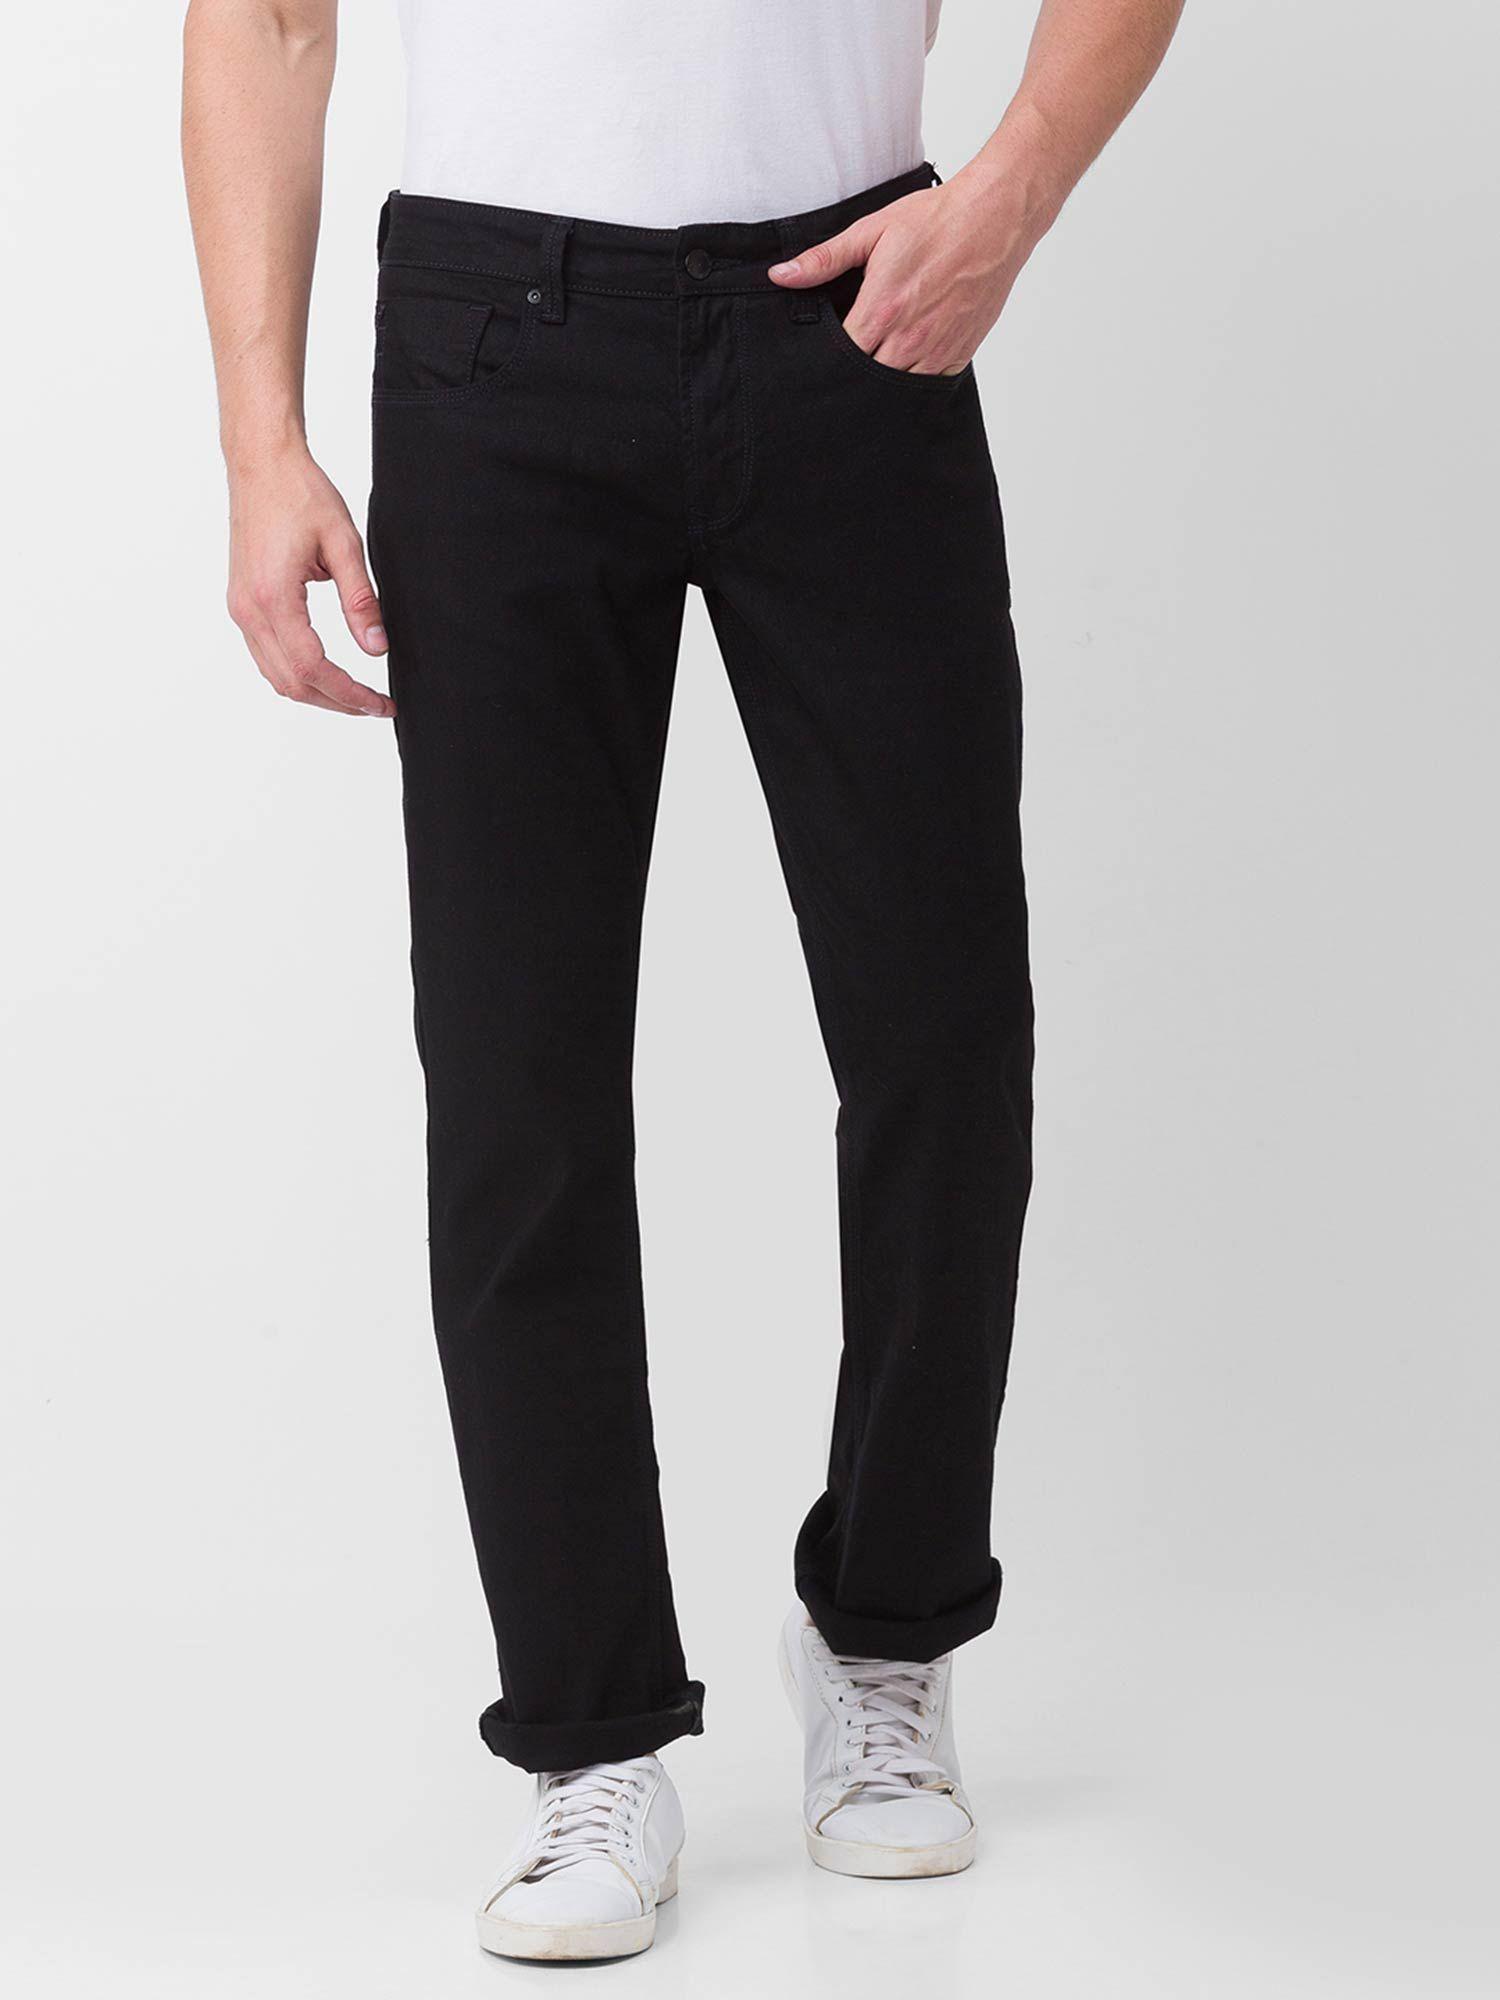 black-cotton-comfort-fit-regular-length-jeans-for-men-(rafter)